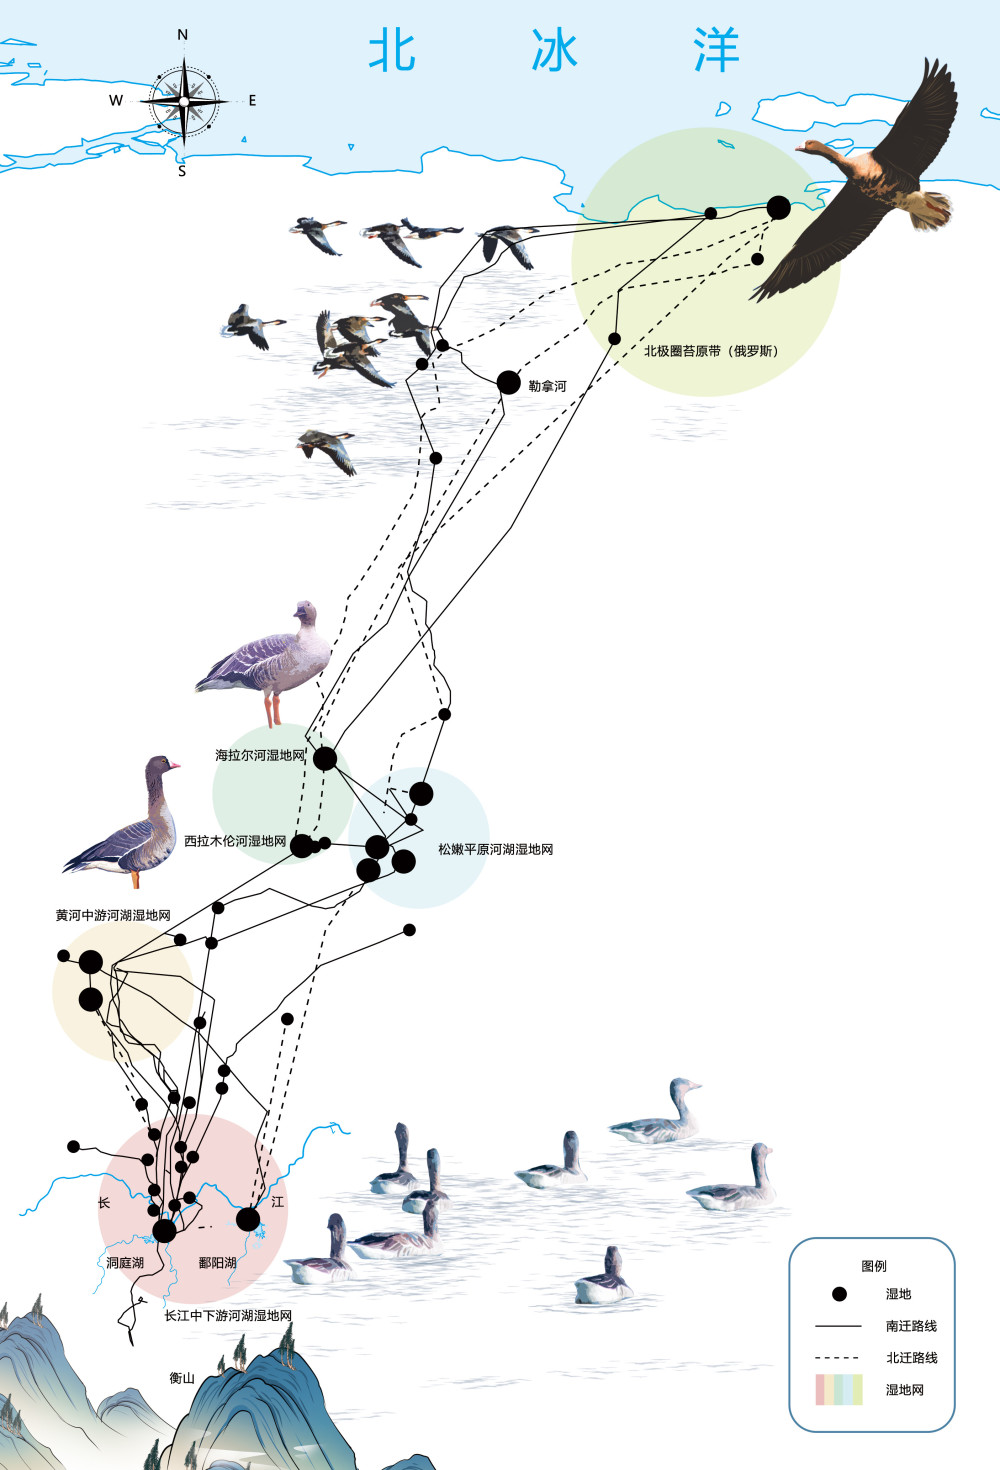 燕子迁徙路线图图片